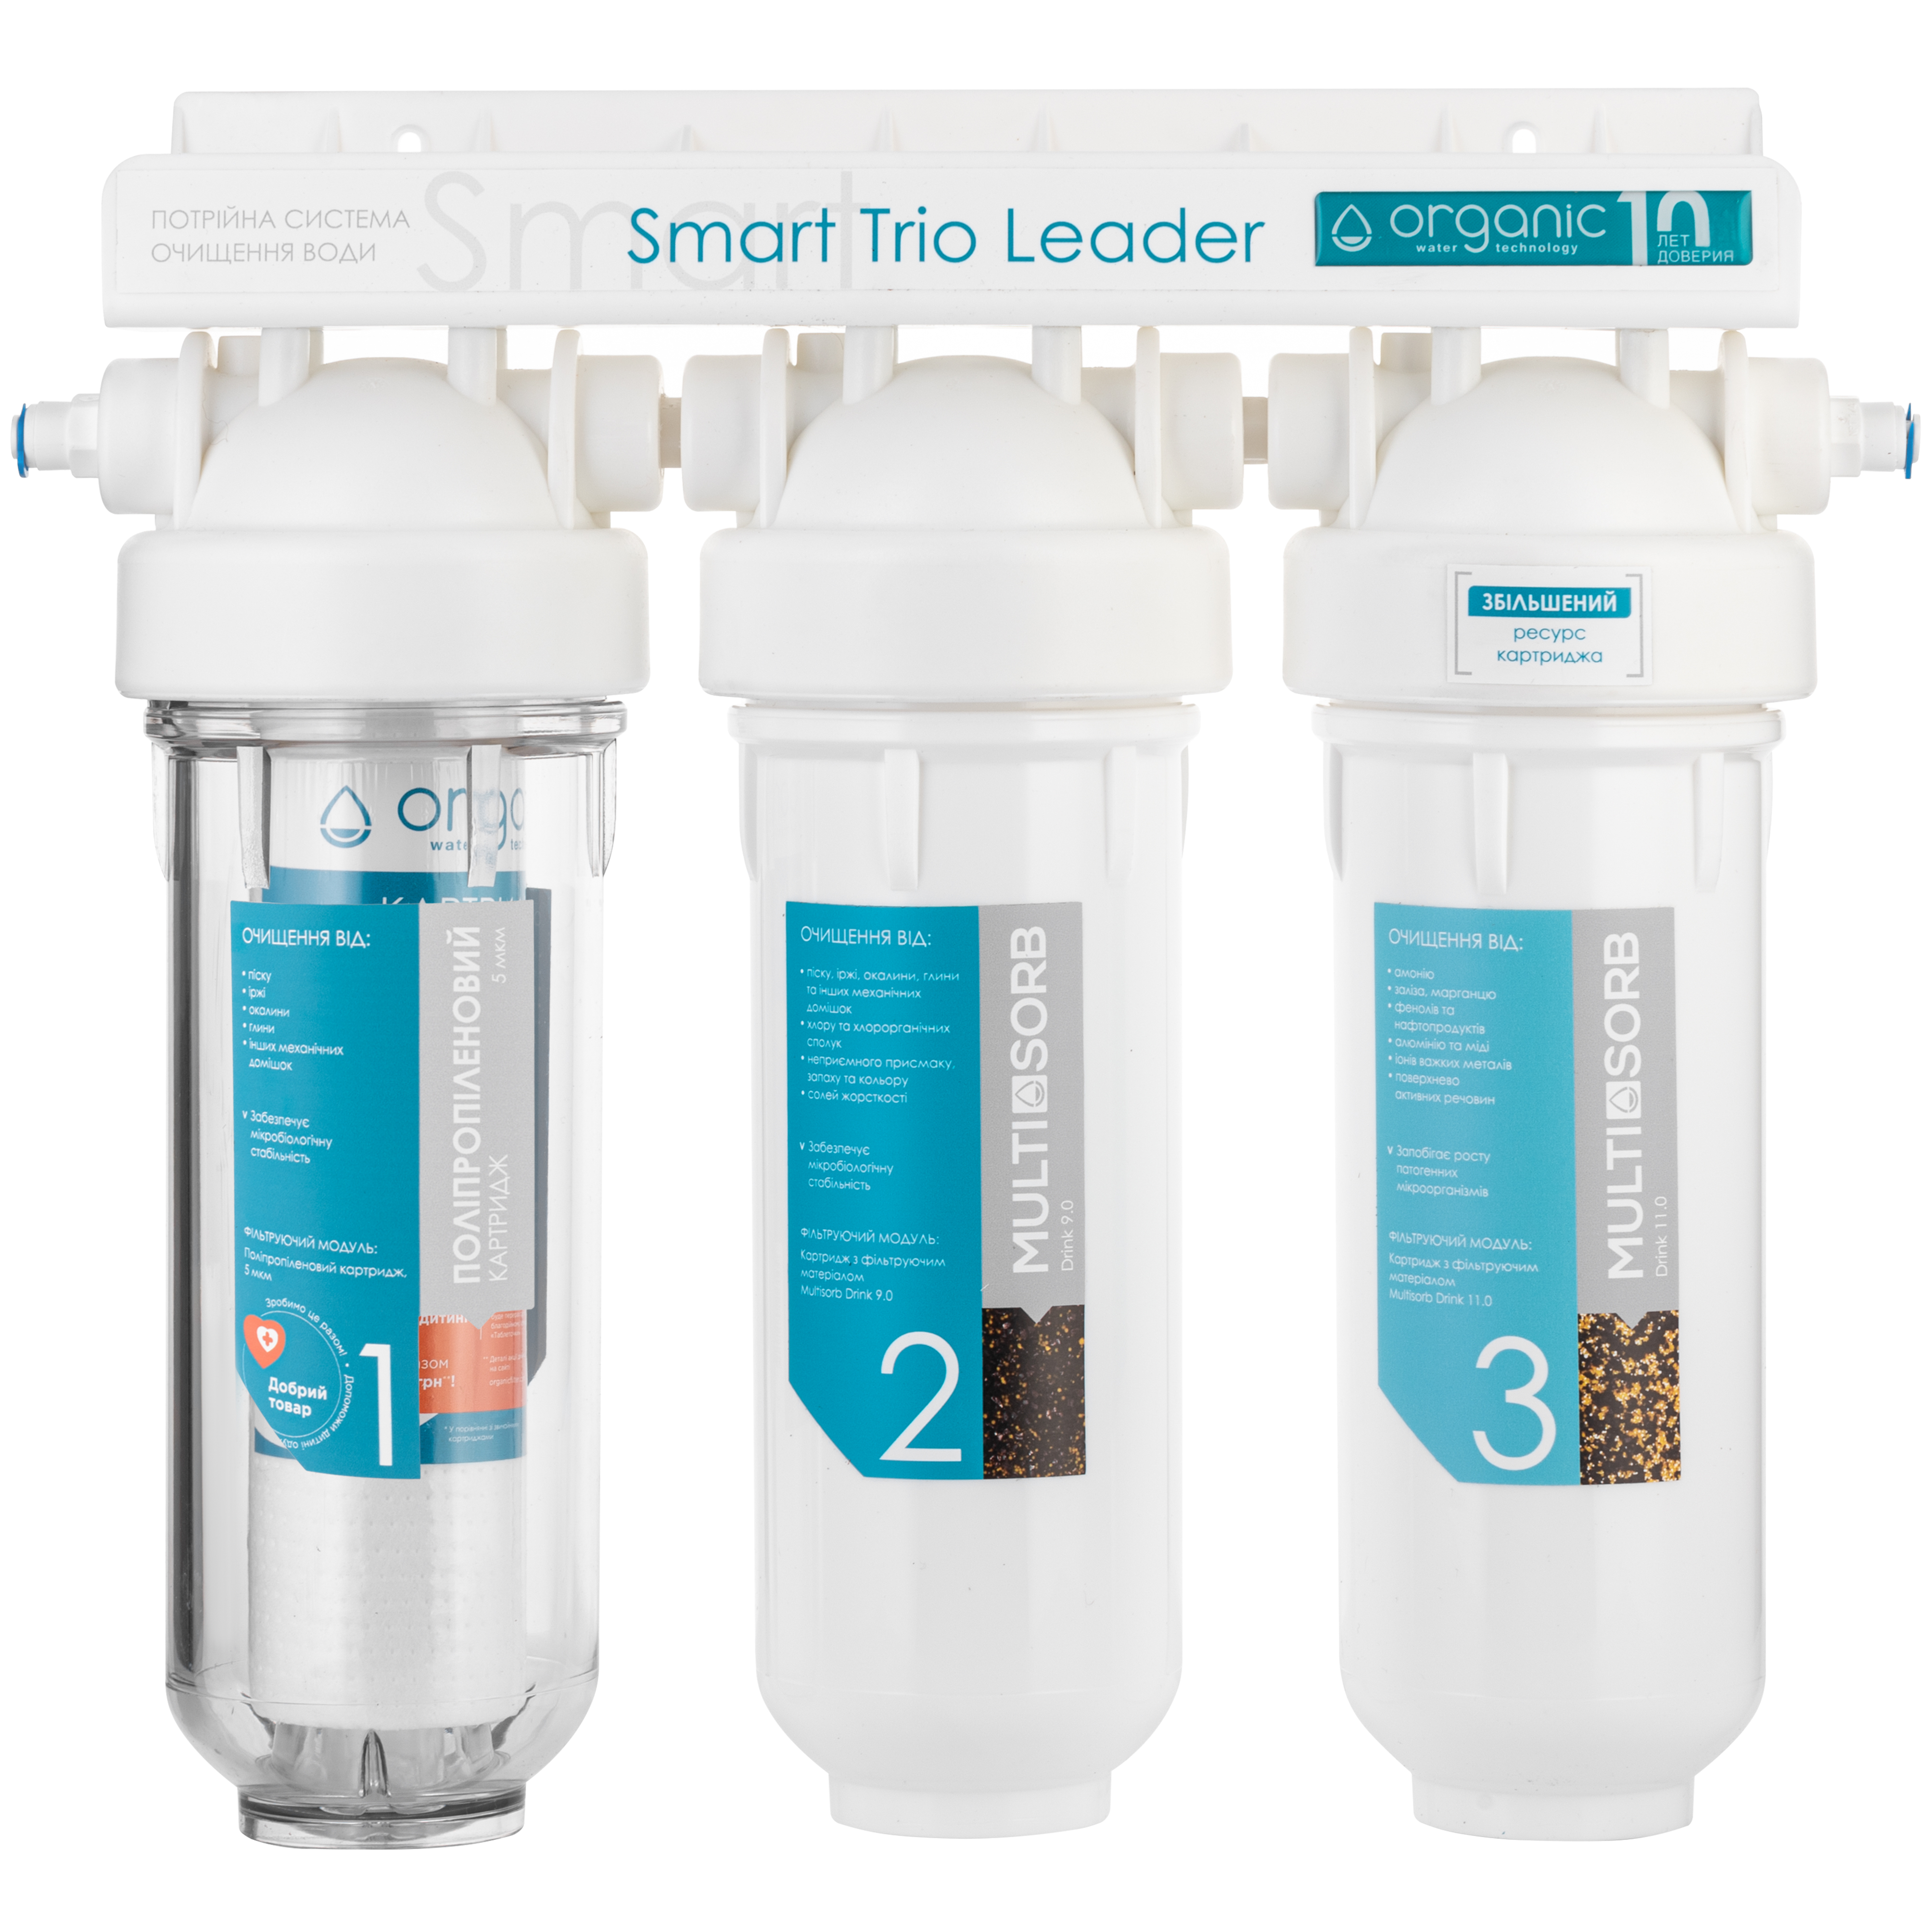 Инструкция фильтр для воды Organic Smart TRIO LEADER